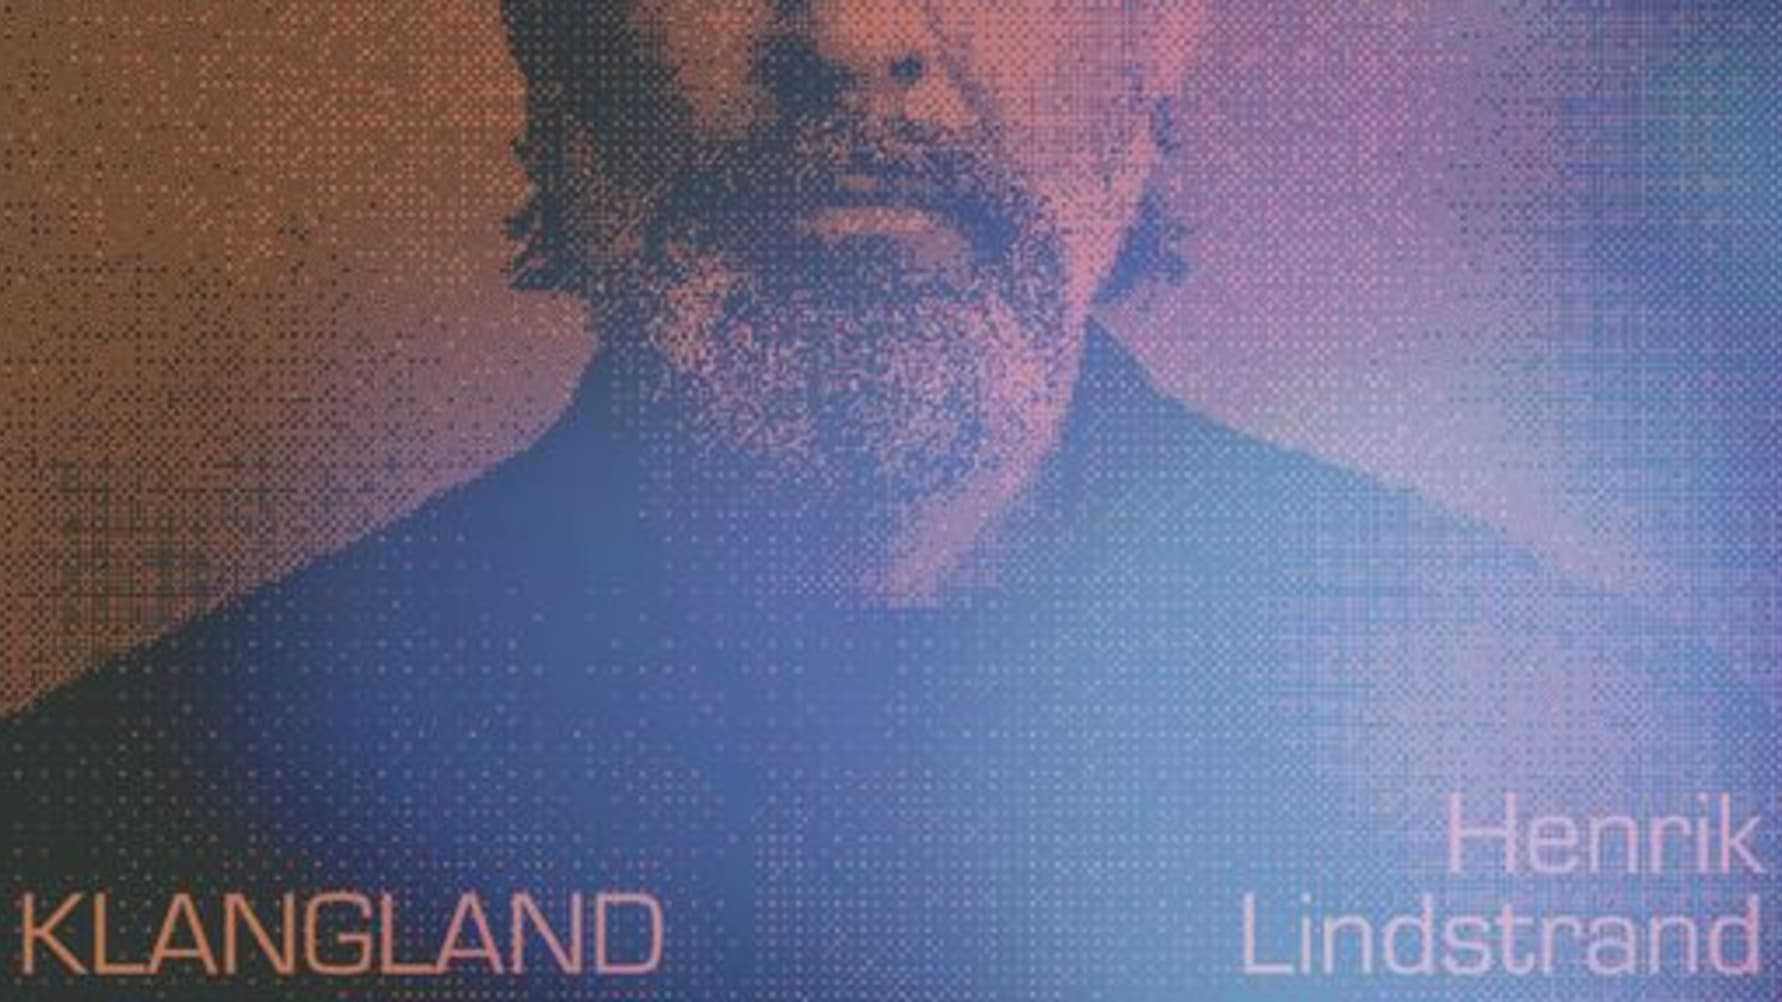 NYTT ALBUM. Pianisten och kompositören Henrik Lindstrand släpper albumet Klangland